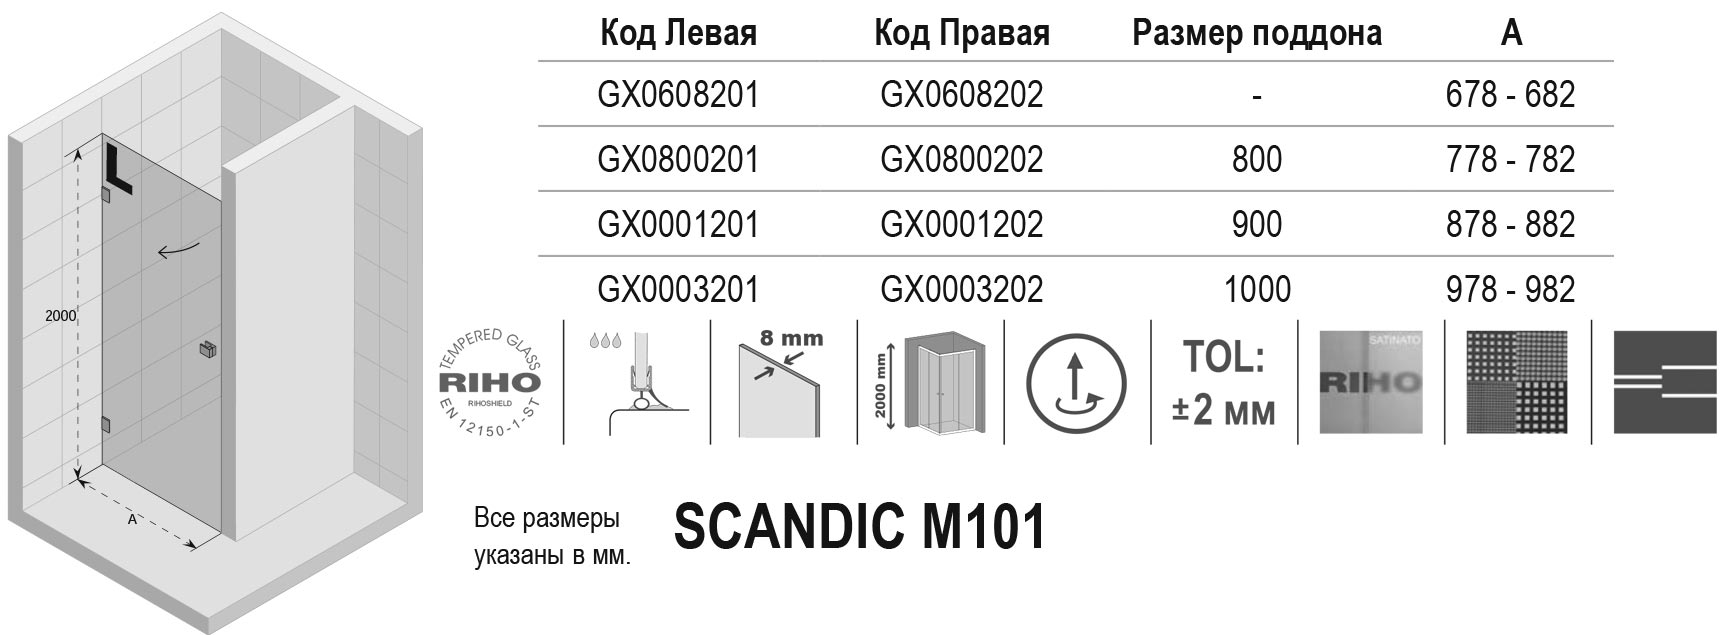 Чертёж Riho Scandic M101 GX0001202